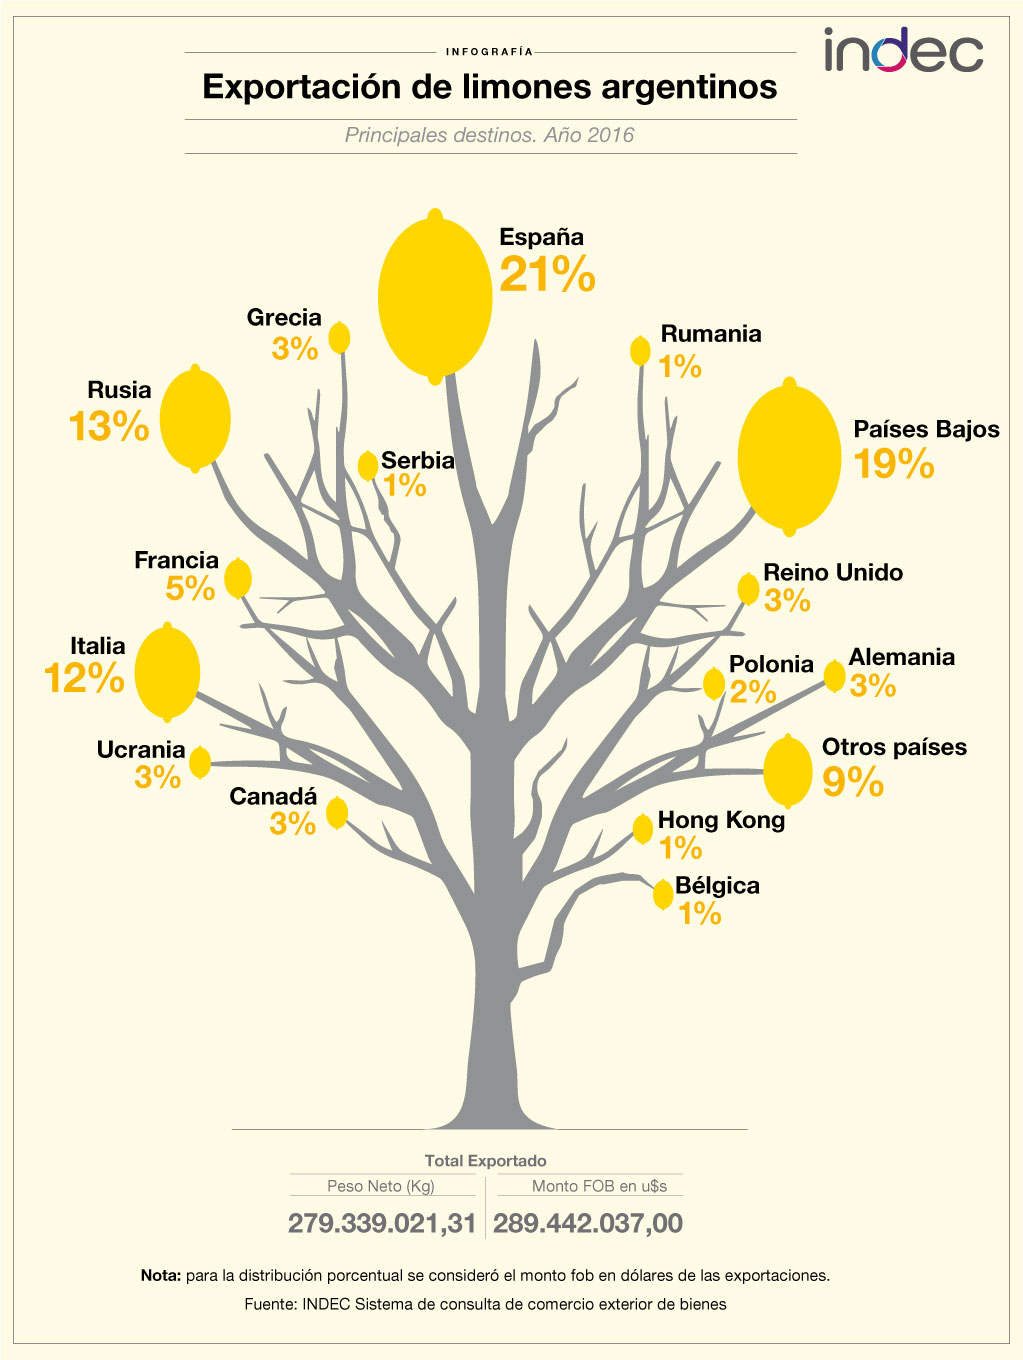 Exportación de limones argentinos. Principales destinos.
Año 2016.